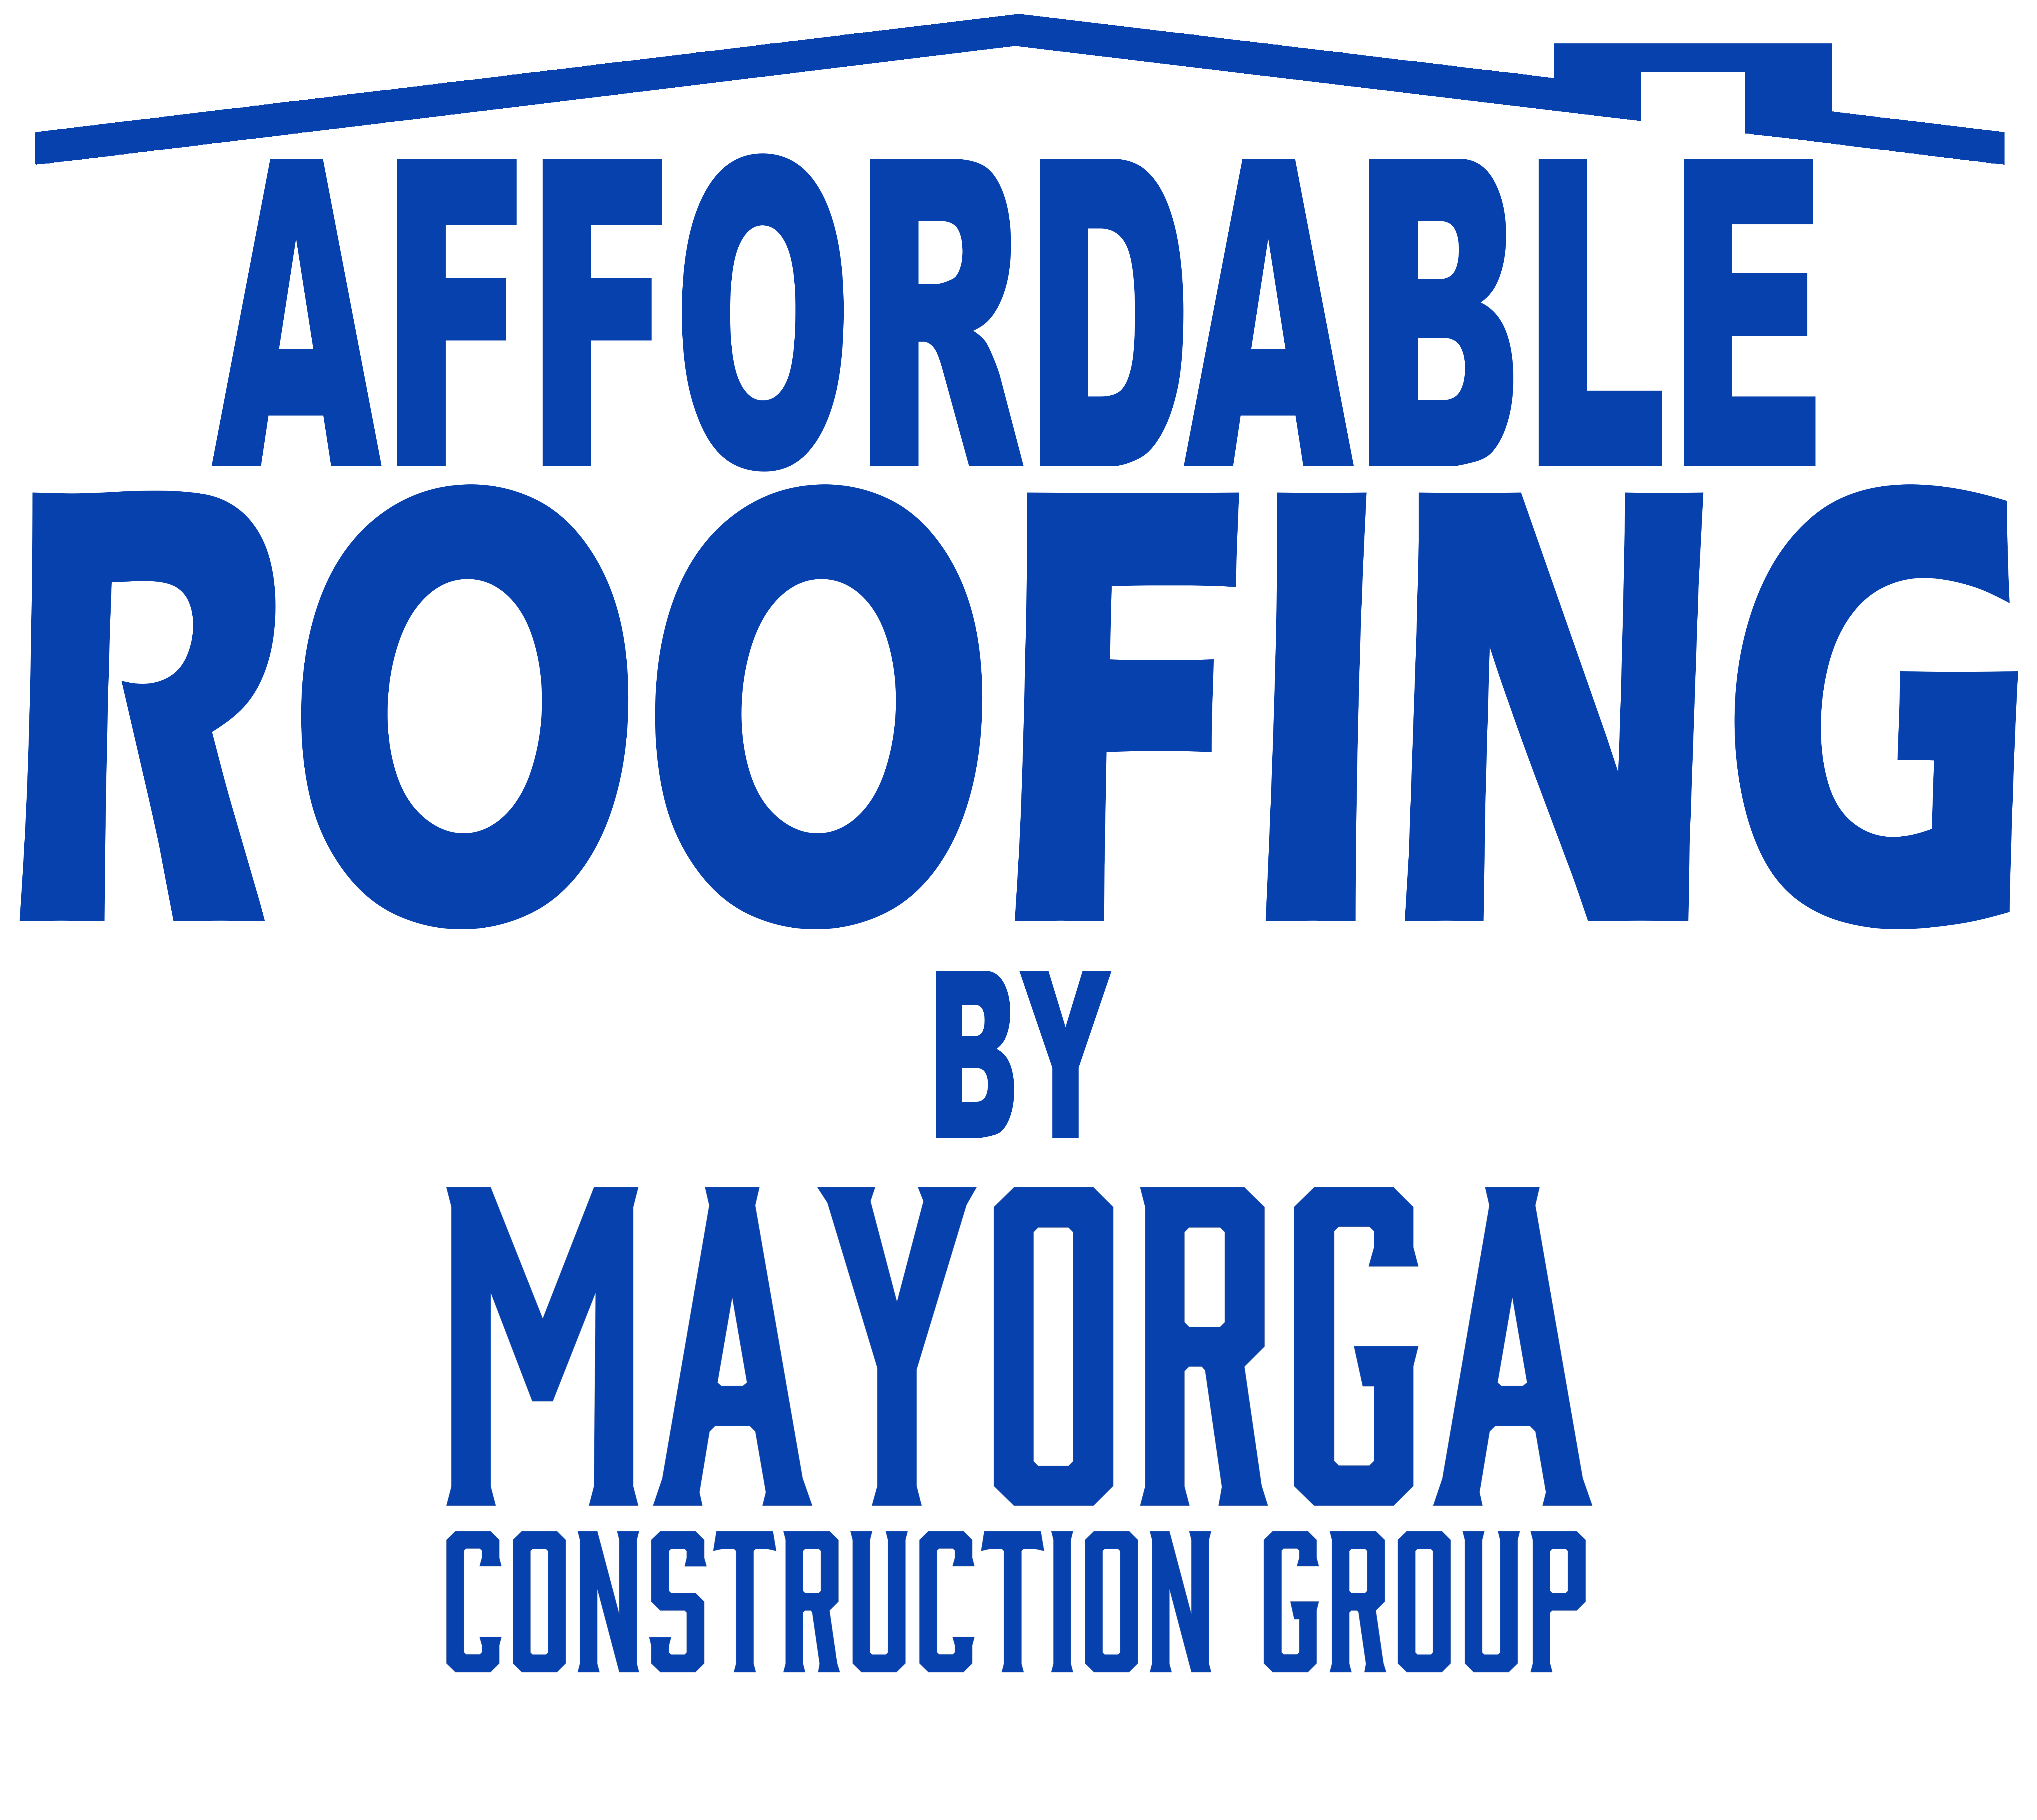 Mayorga Construction Group LLC Logo